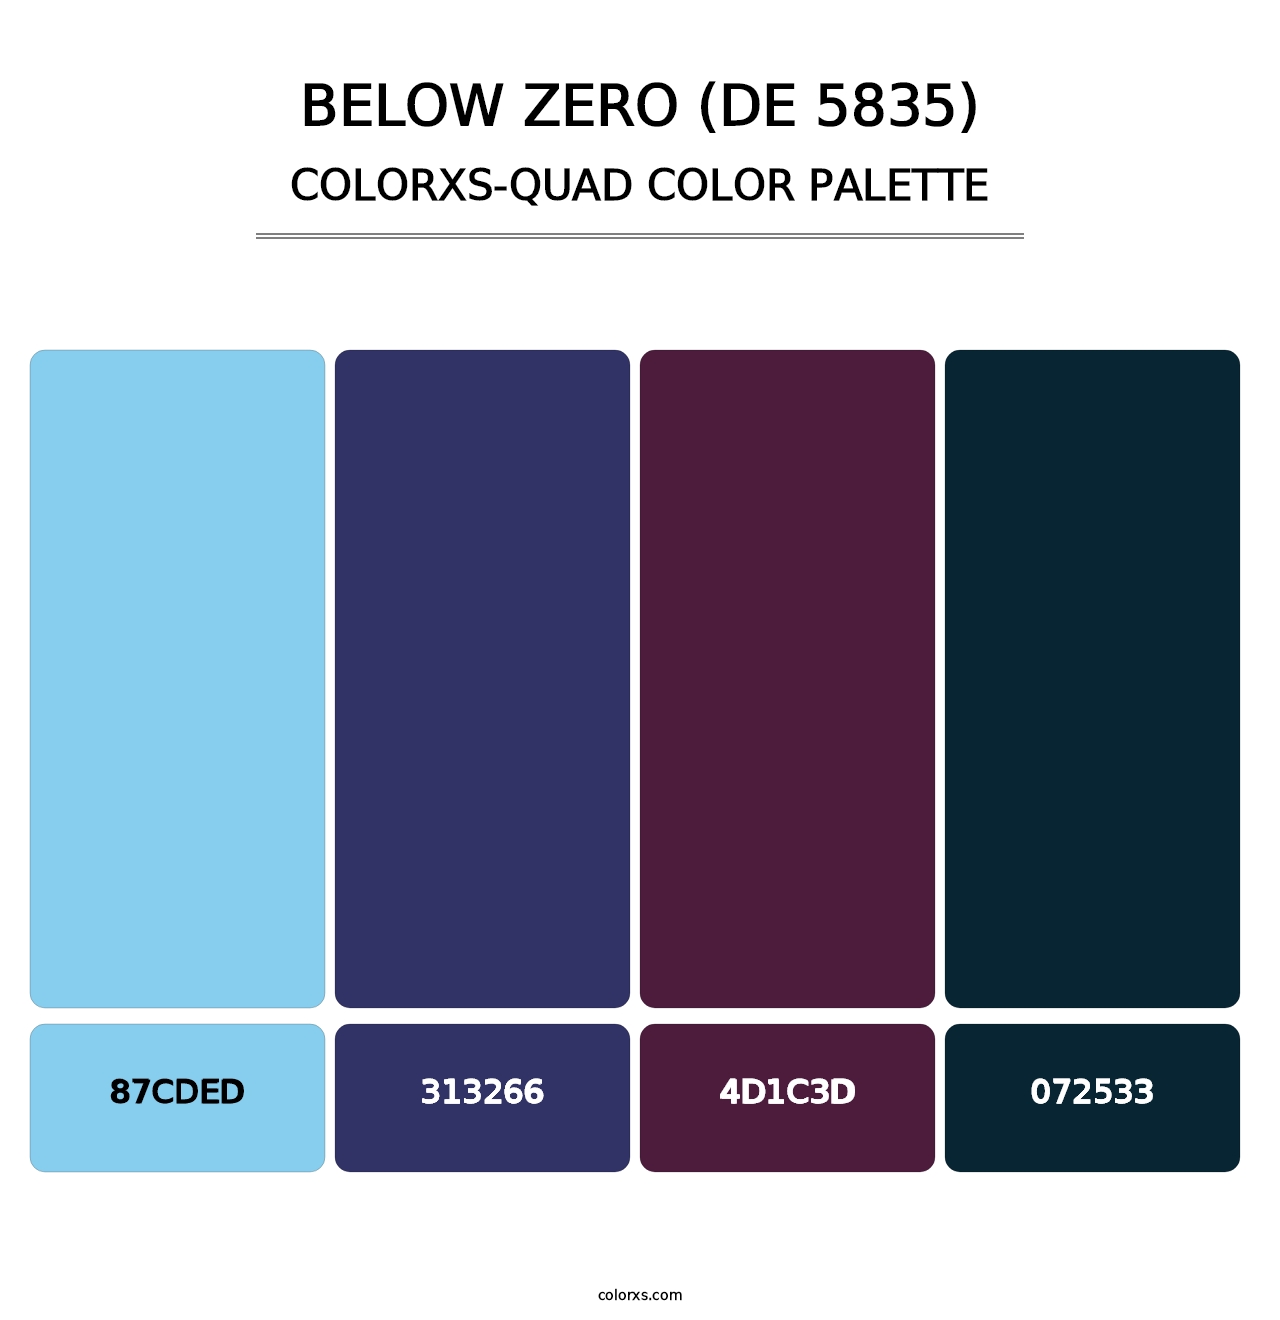 Below Zero (DE 5835) - Colorxs Quad Palette